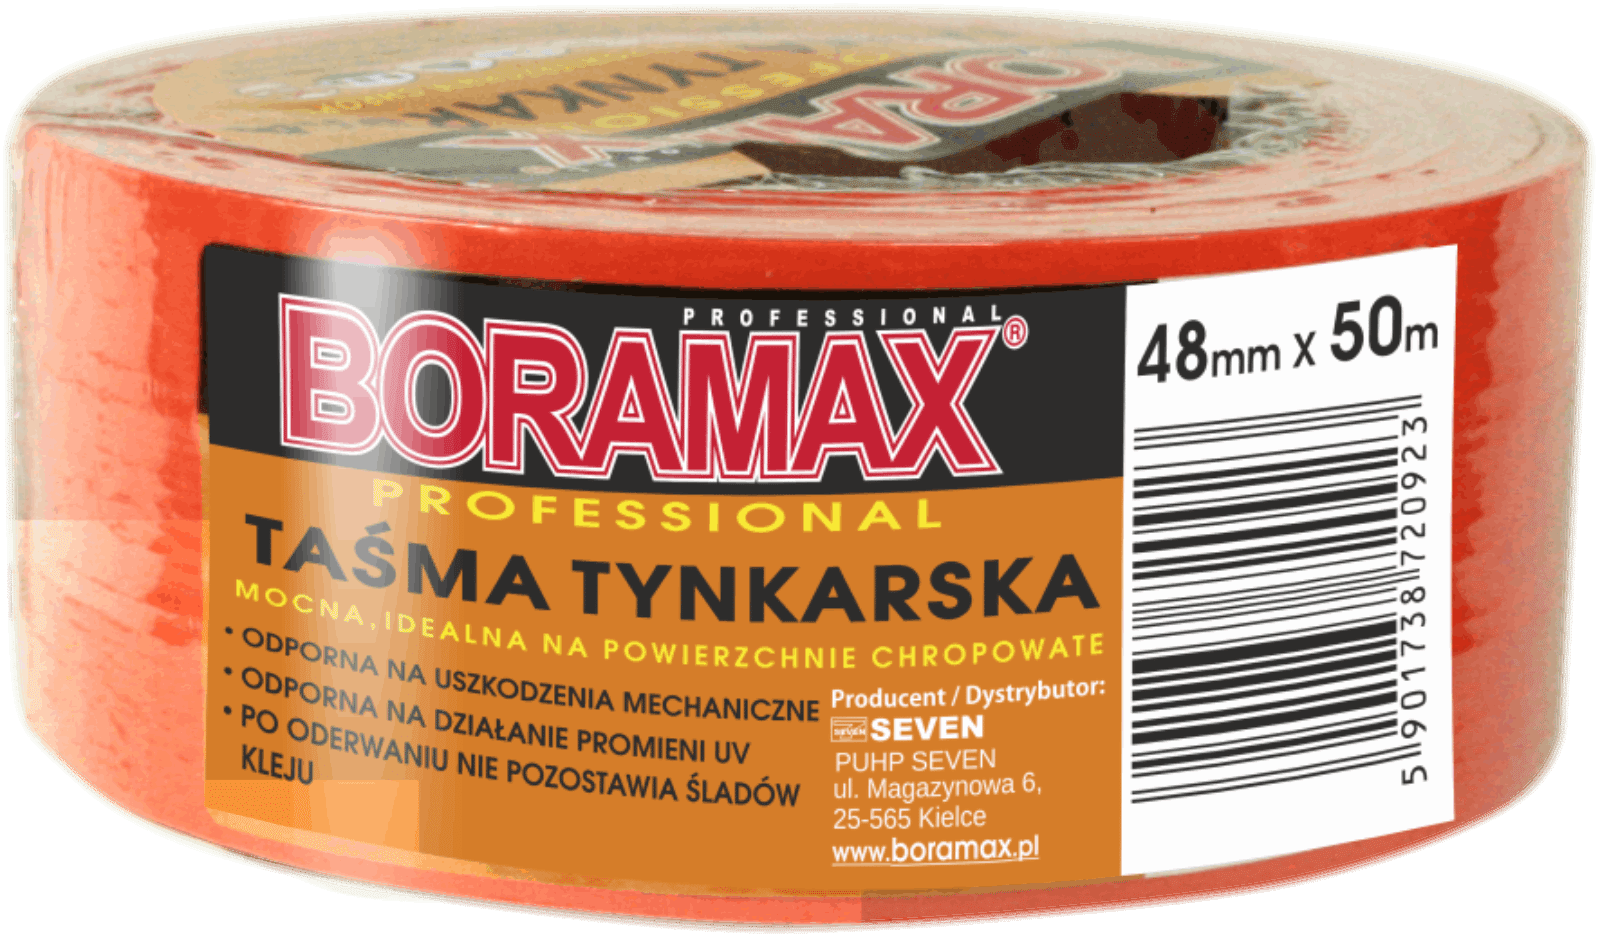 TAŚMA TYNKARSKA BORAMAX 48mmx50m  (Zdjęcie 1)